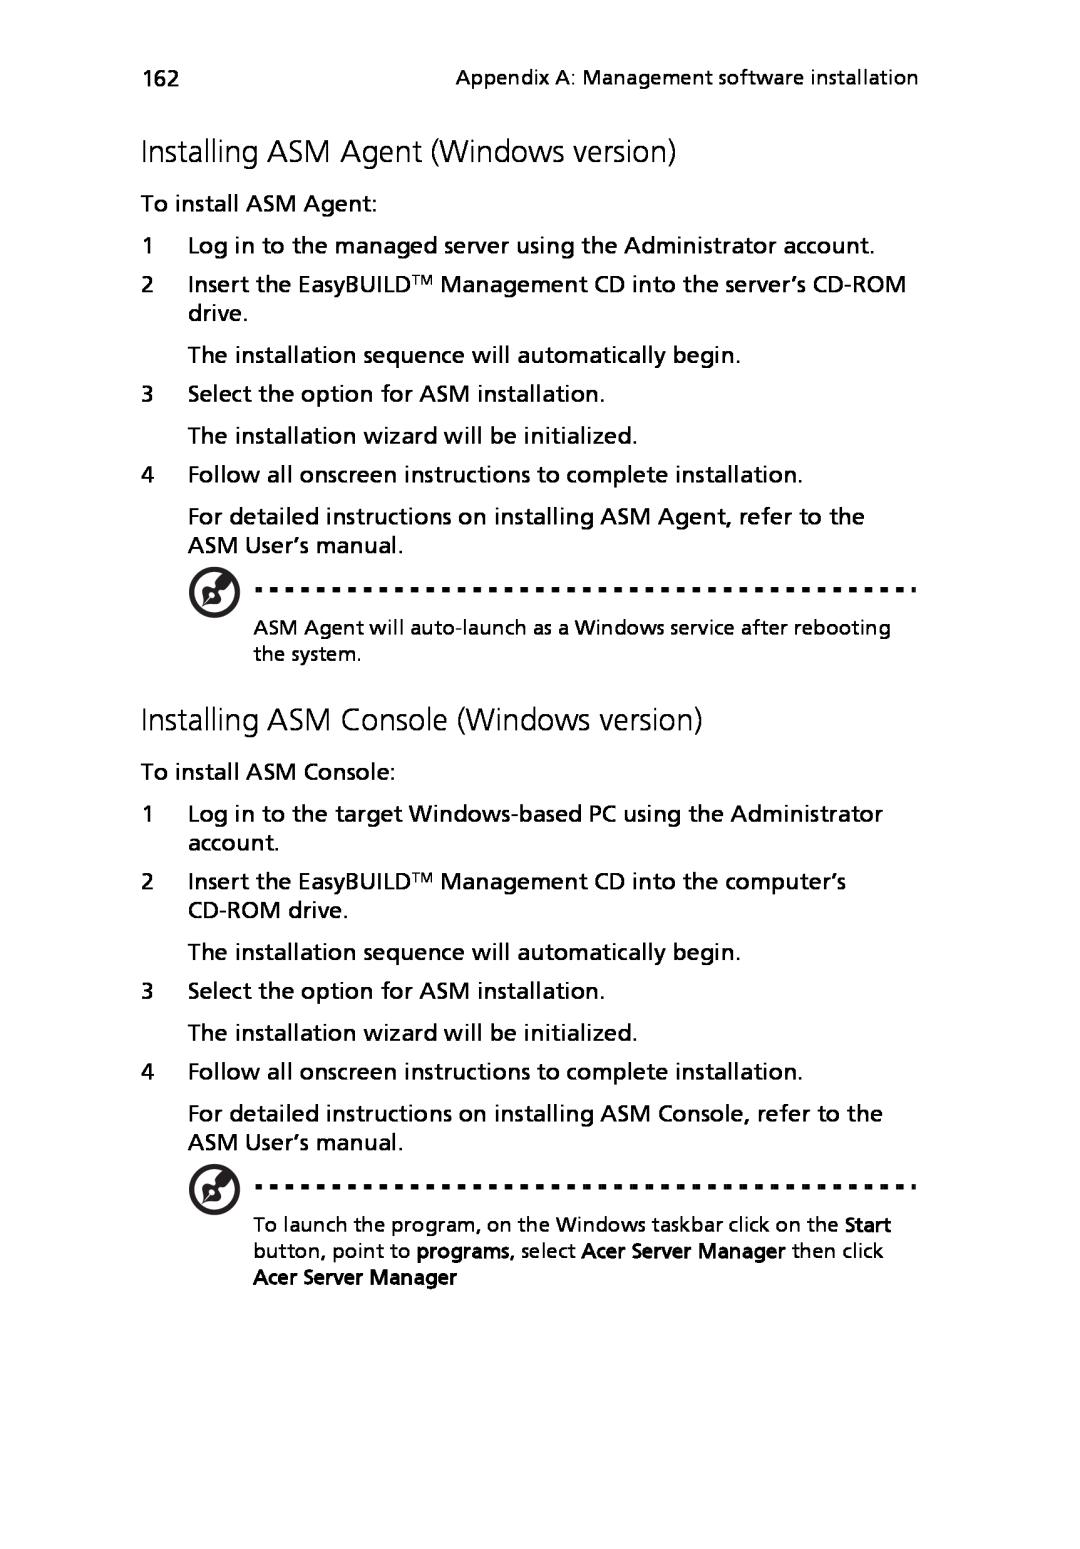 Acer Altos R710 manual Installing ASM Agent Windows version, Installing ASM Console Windows version, Acer Server Manager 